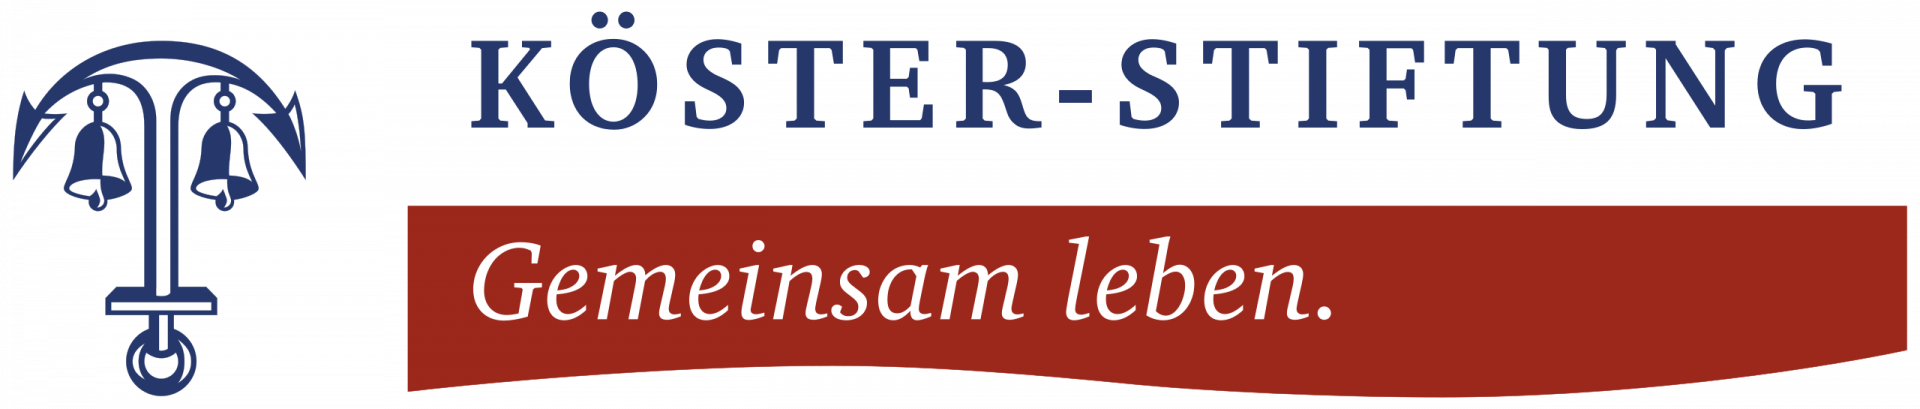 logo_koester_stiftung.svg